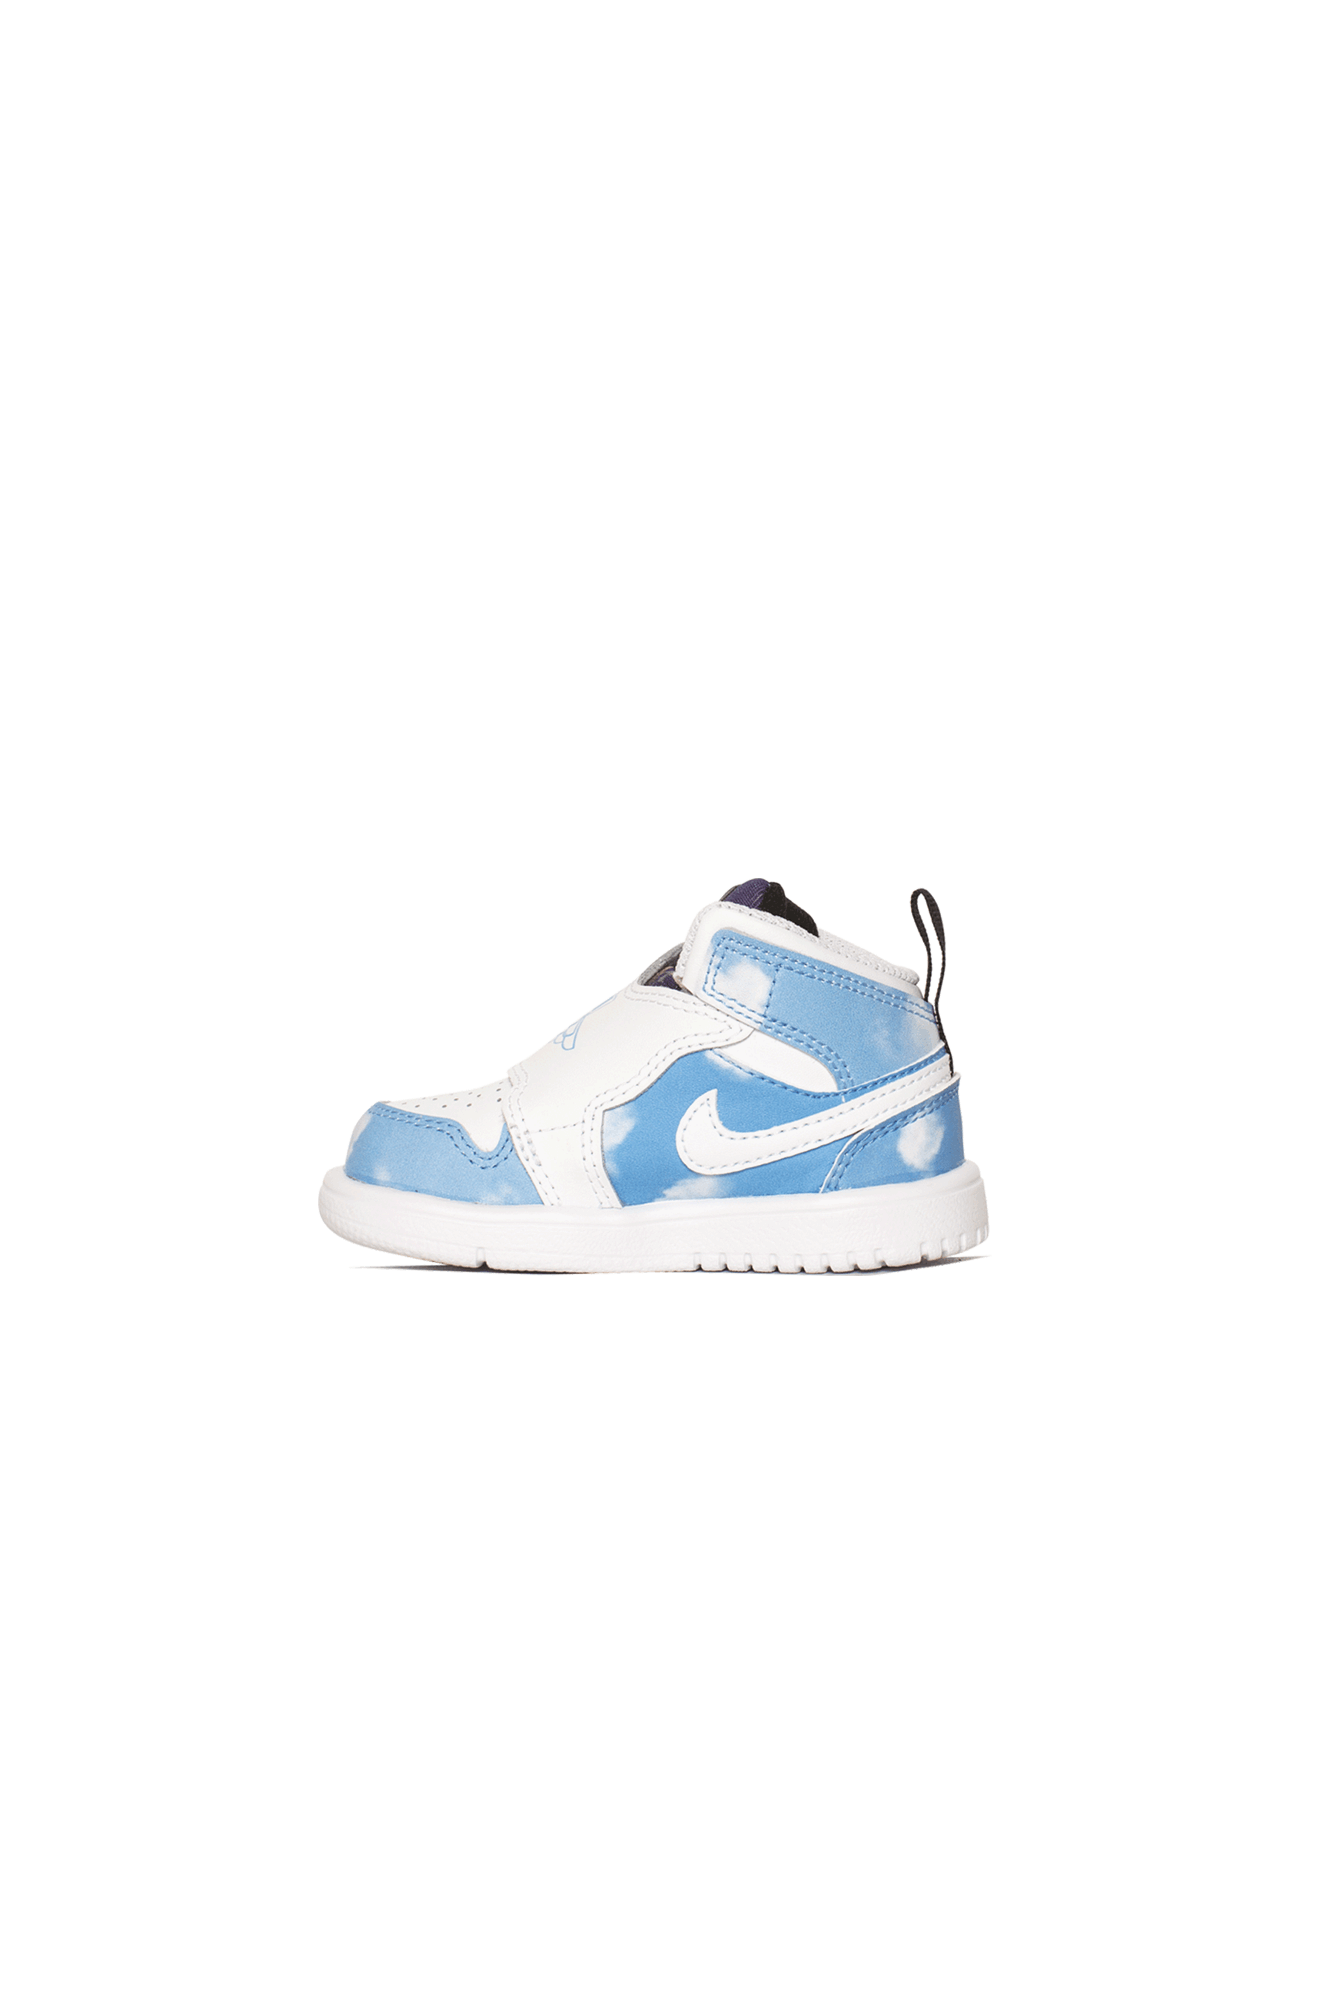 Jordan Brand Sneakers 1 Retro Sky "Fearless" PS Blu CT2477-#000#400#10.5c - One Block Down